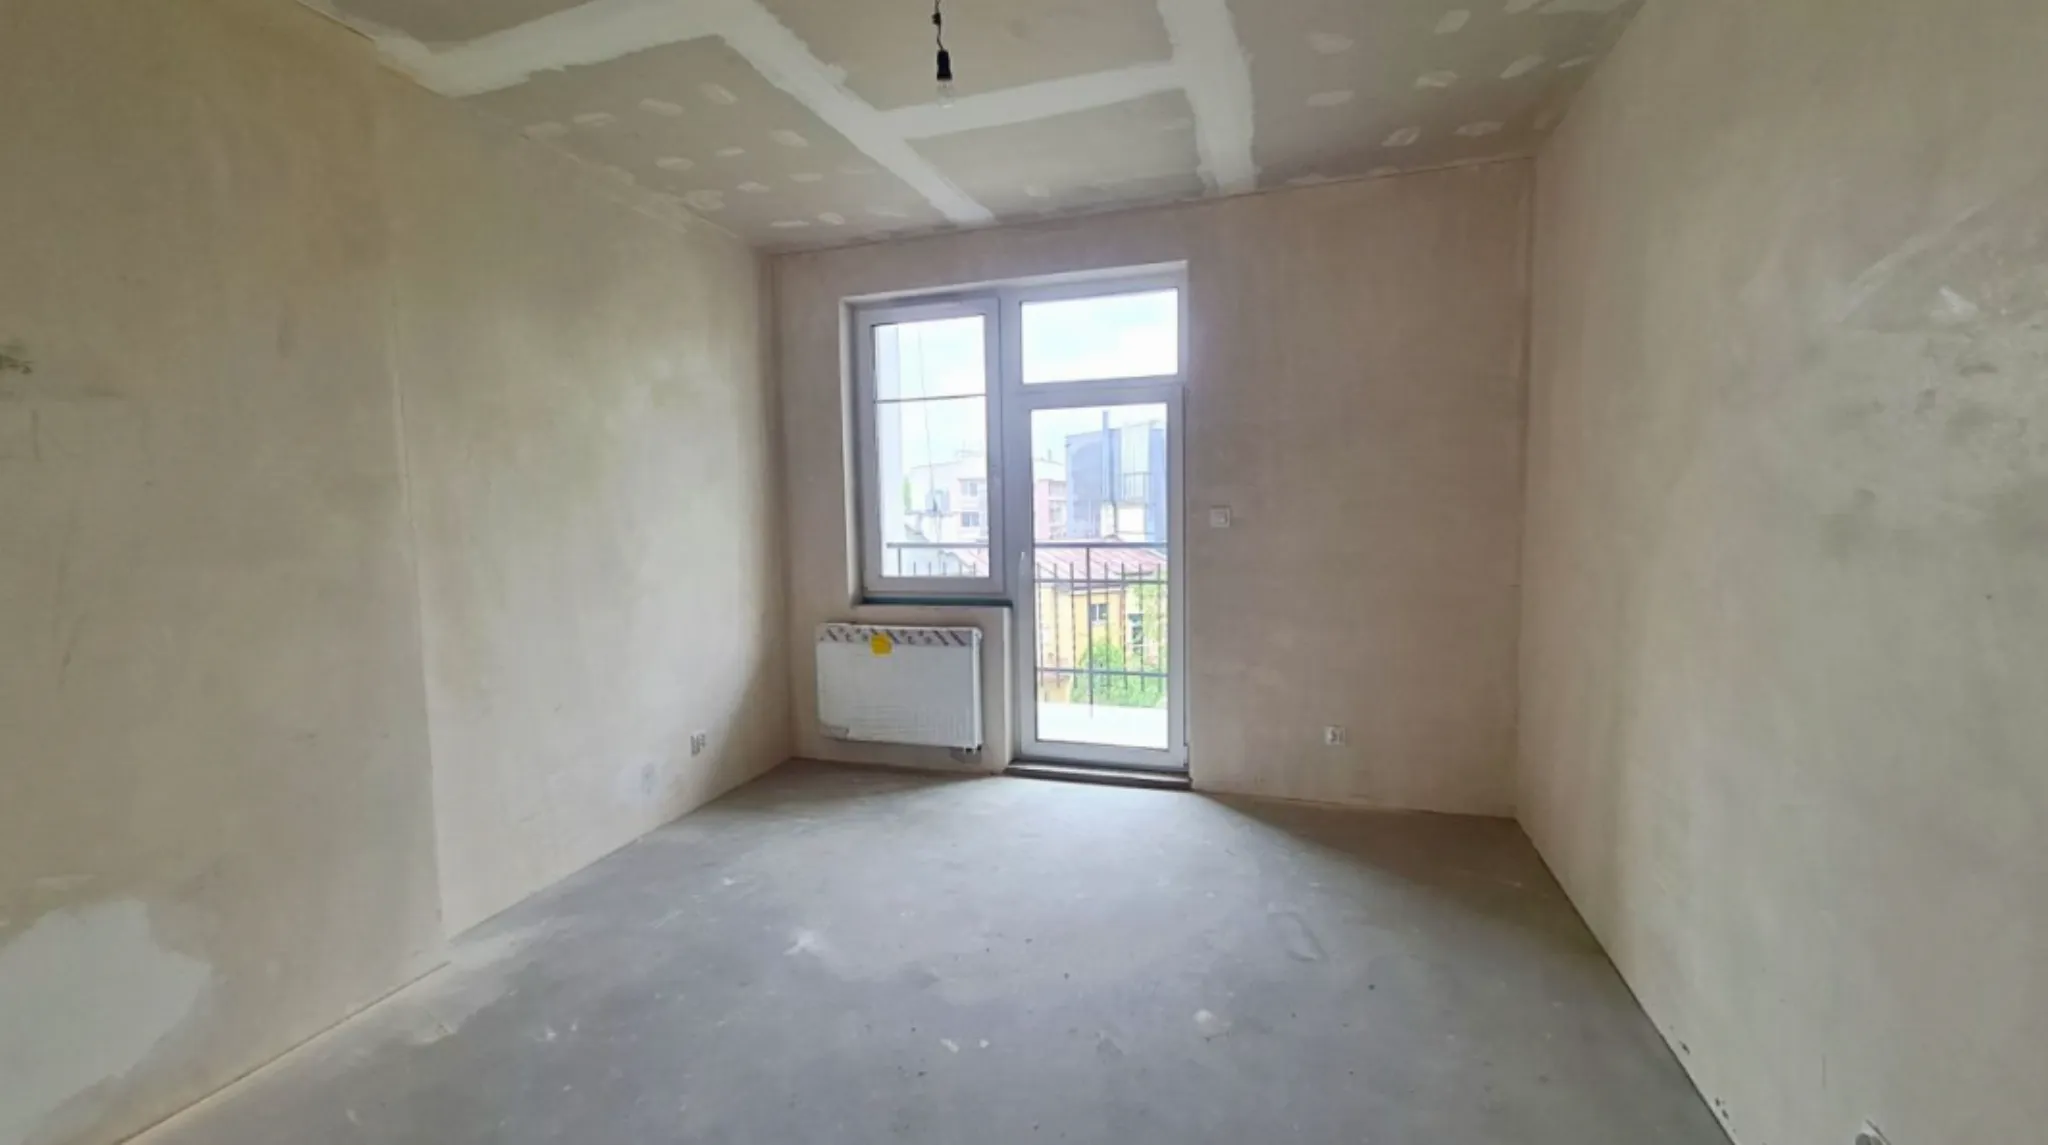 Krowodrza mieszkanie sprzedam w stanie deweloperskim - Mieszkanie na sprzedaż Kraków